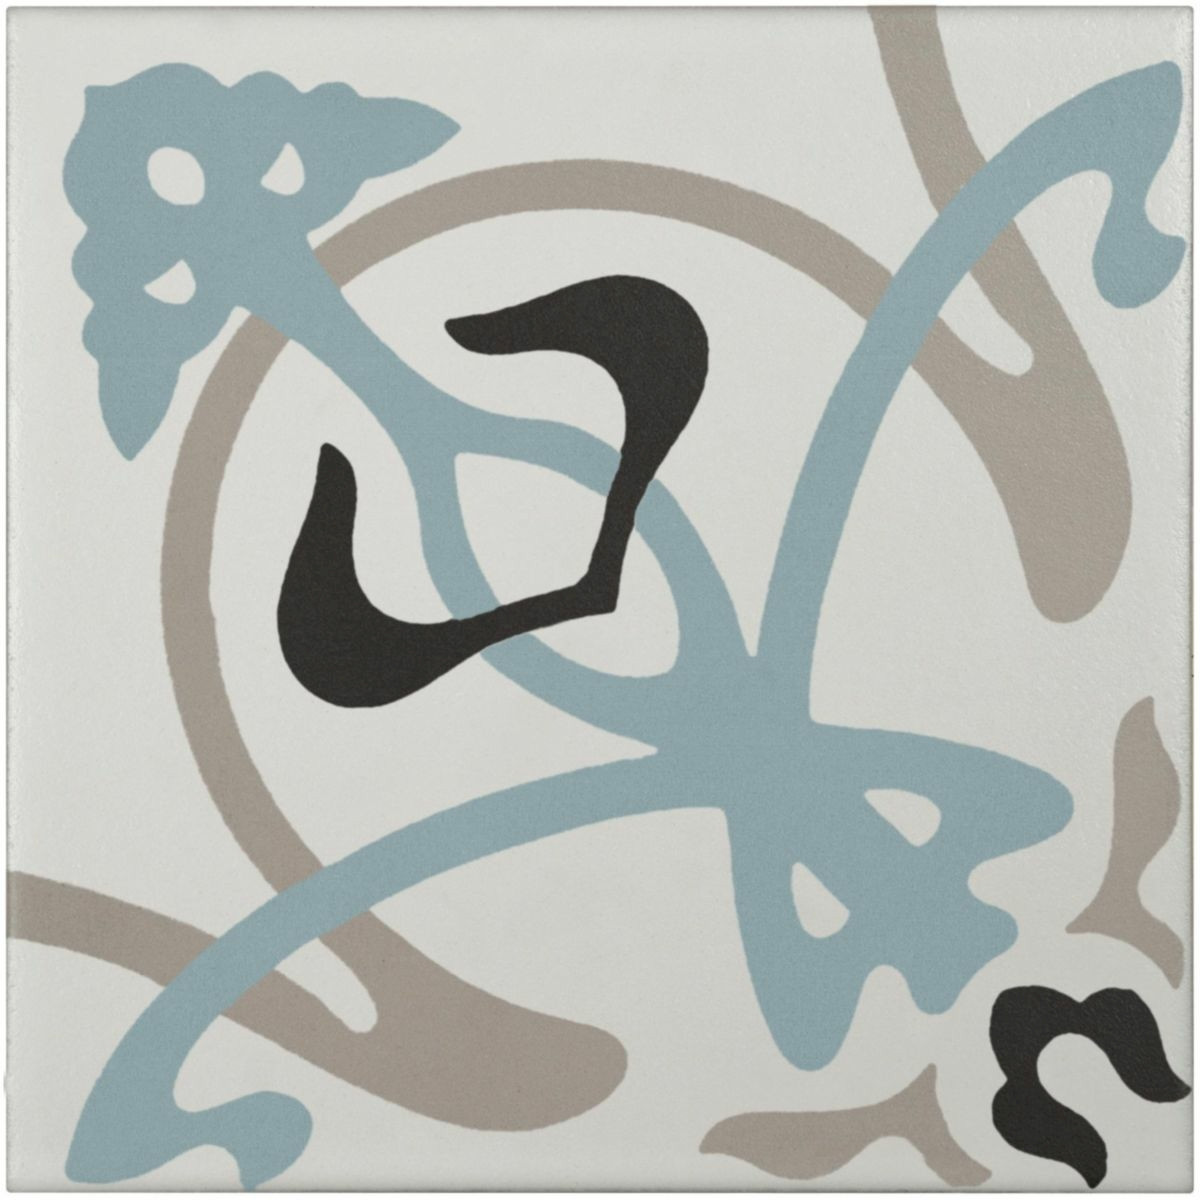 BATI ORIENT - Grès cérame Contemporain bleu / anthracite / blanc cassé / gris décor  - 20 x 20 cm - Réf.CEMI18